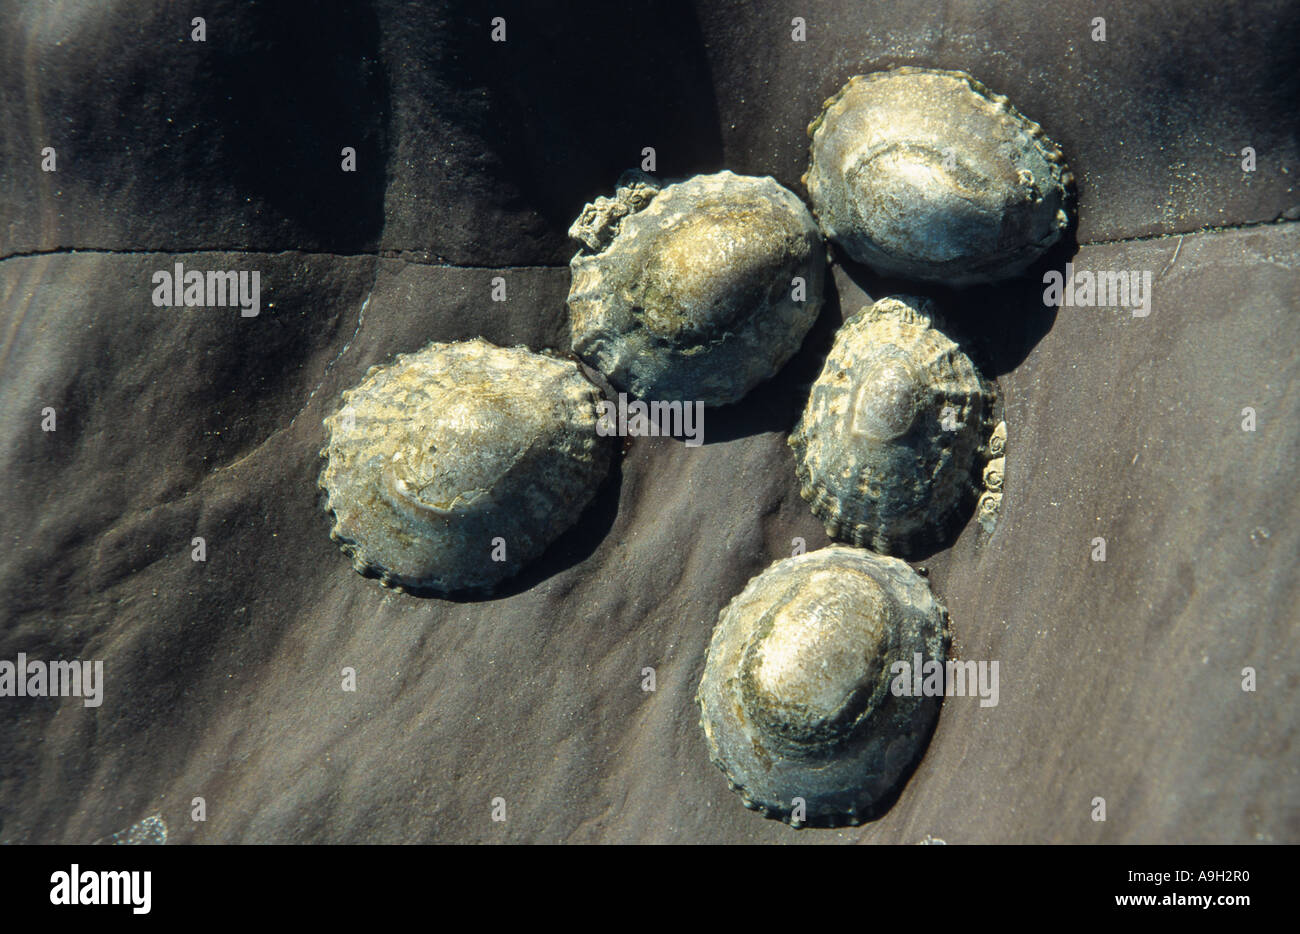 Napfschnecken, echte Napfschnecken (Patellidae), Irland Stockfoto